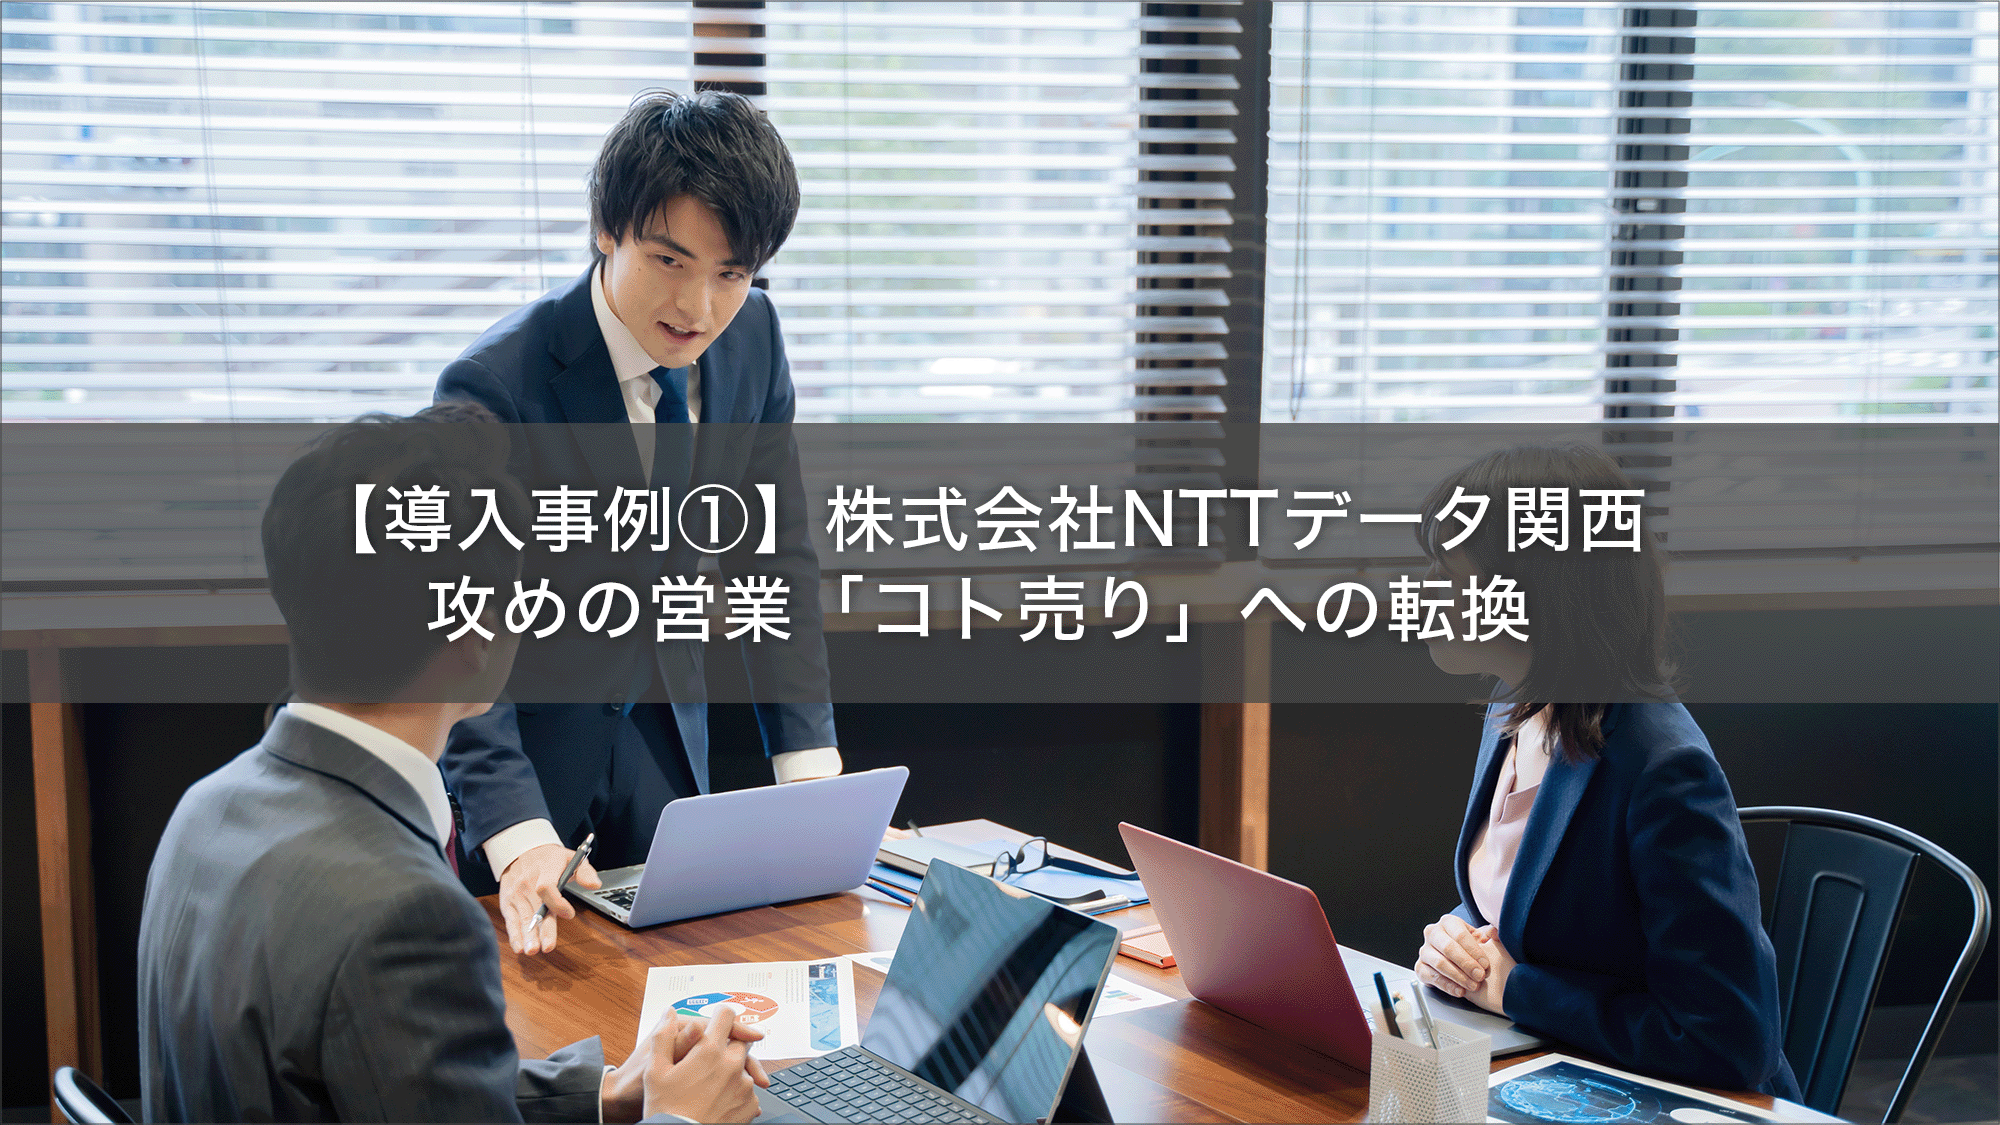 株式会社NTTデータ関～攻めの営業「コト売り」への転換～